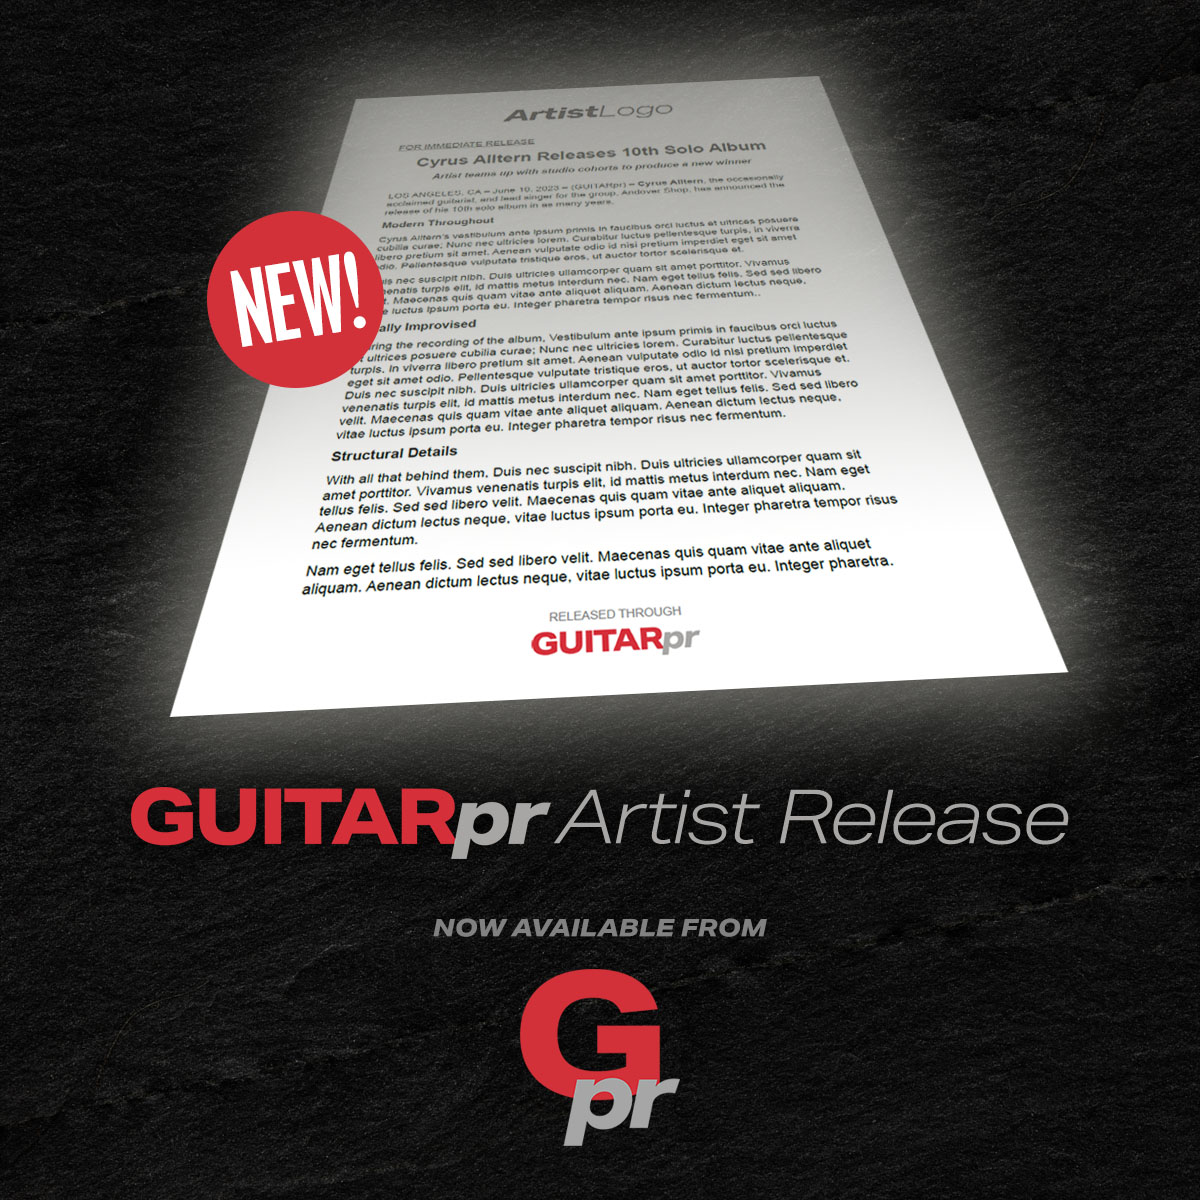 GUITARpr Artist Release